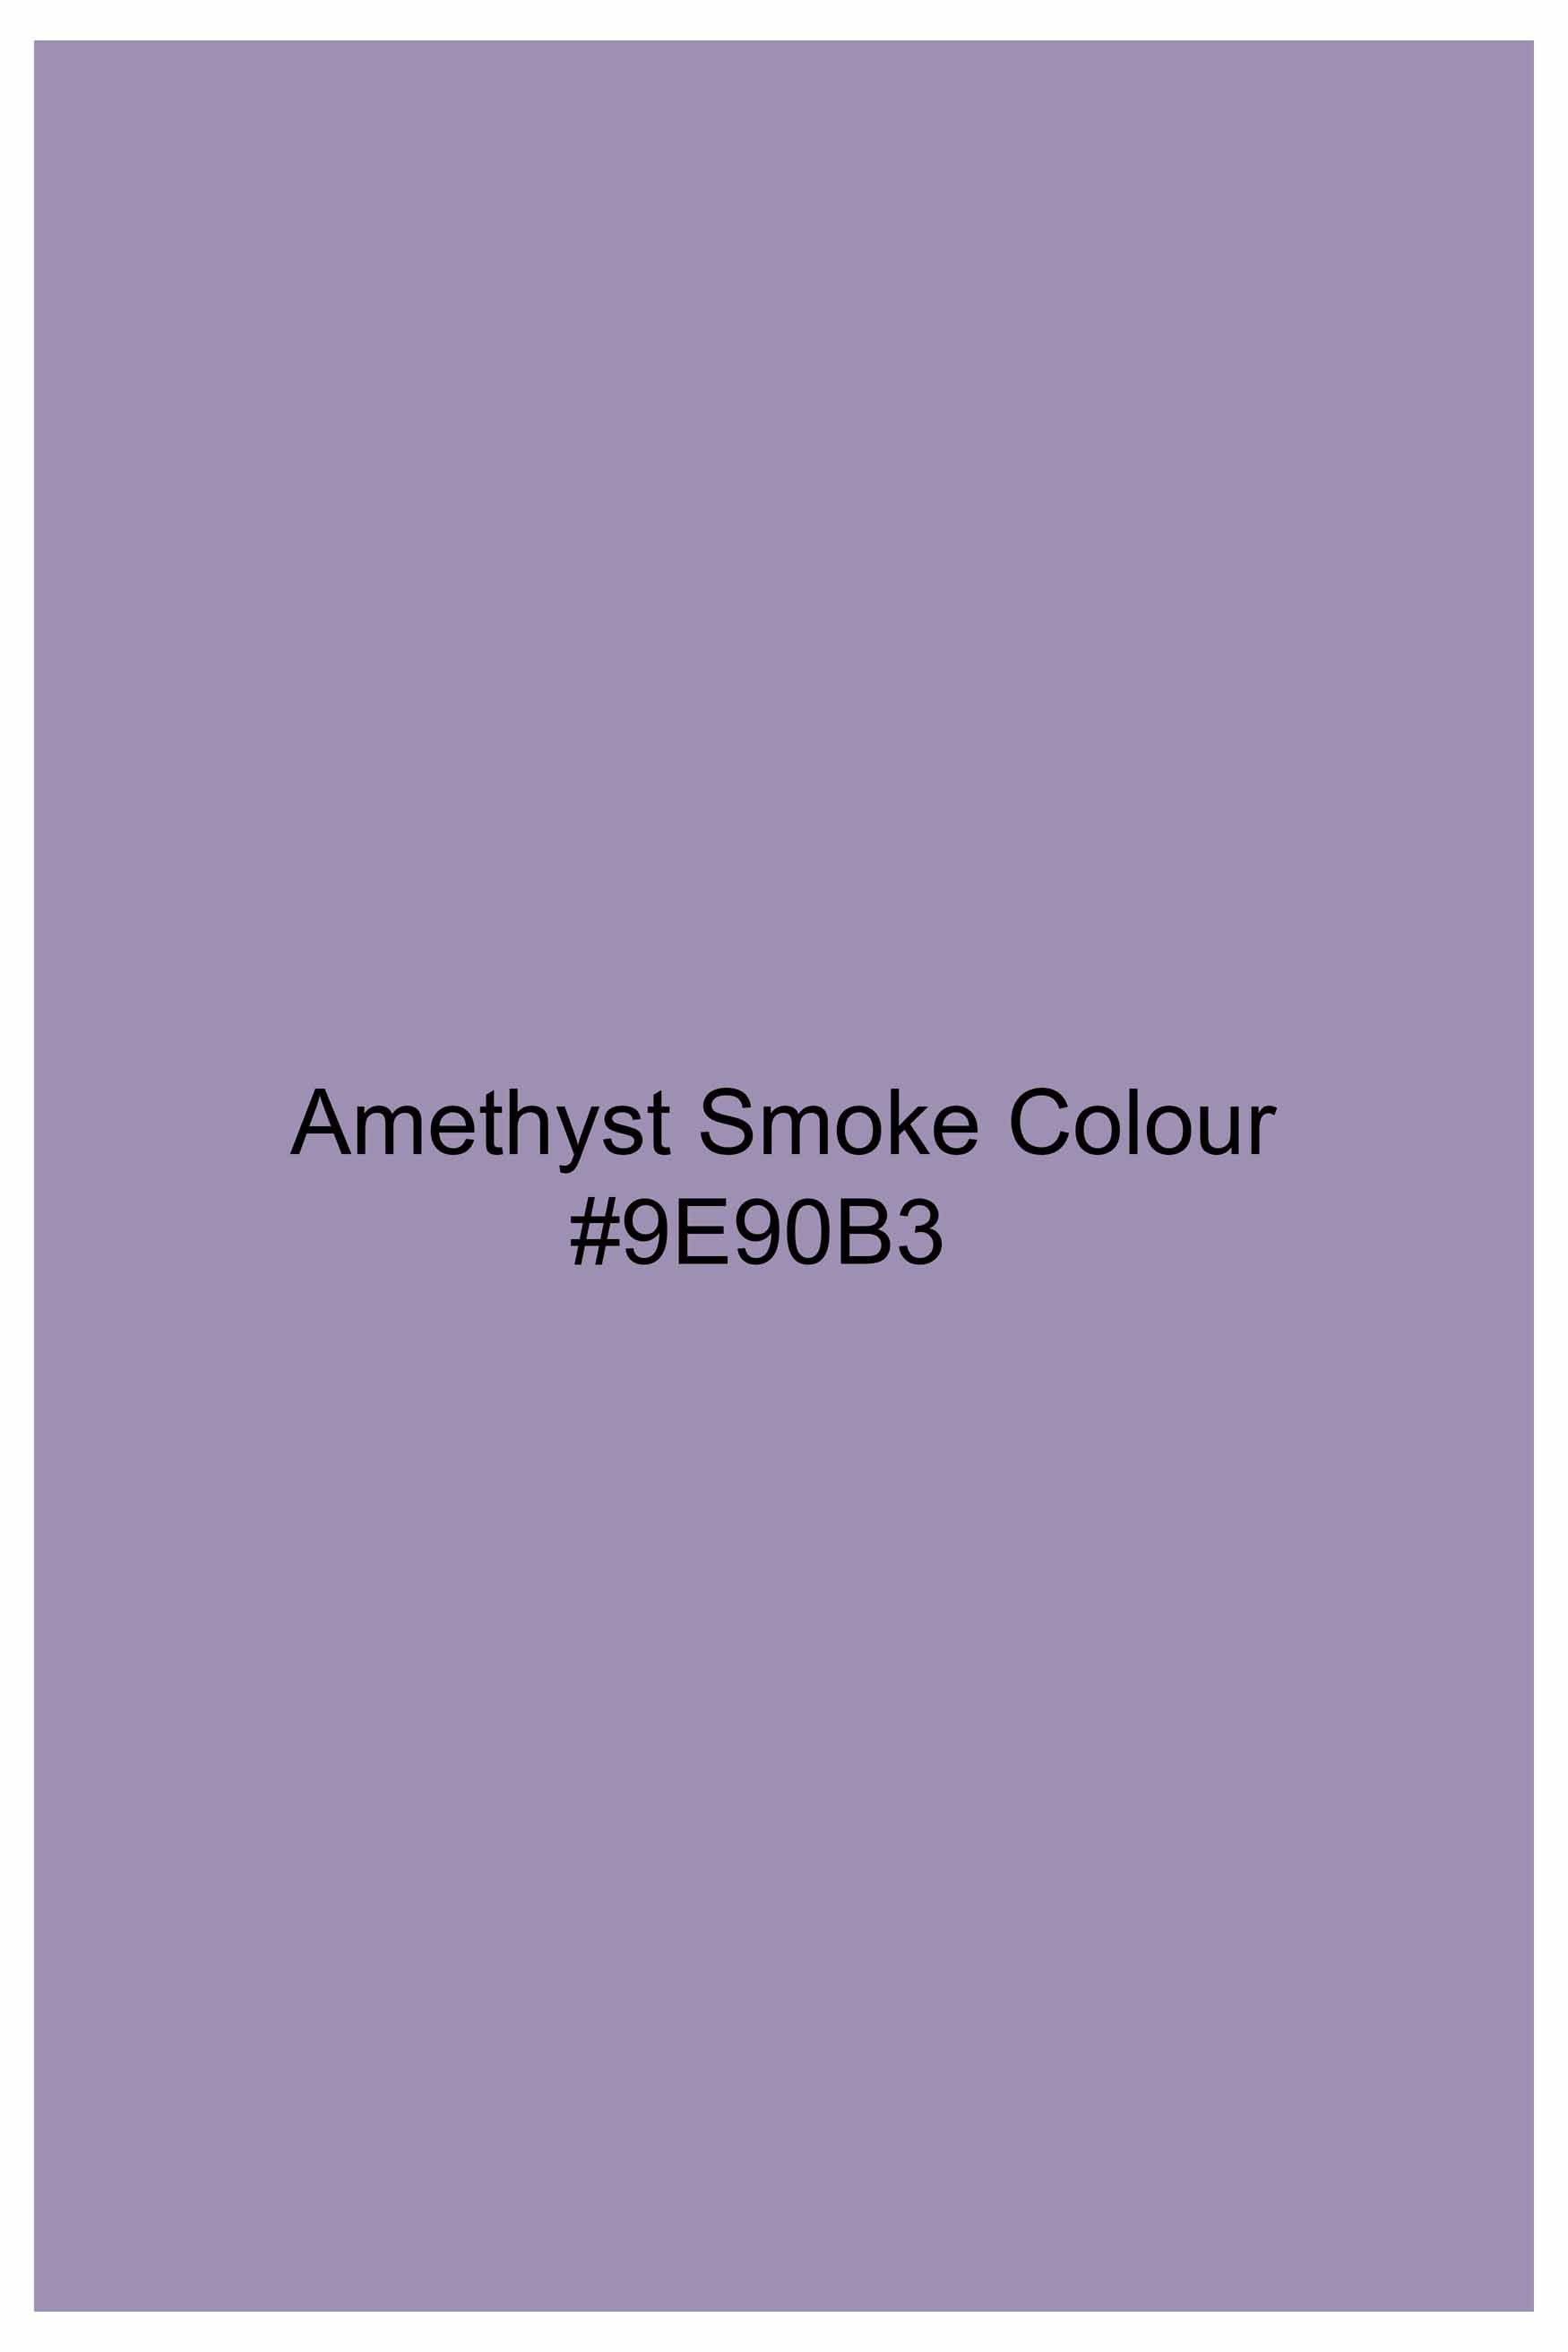 Amethyst Smoke Lavender Subtle Sheen Super  Soft Premium Cotton Mandarin Shirt 11015-M-BLK-38, 11015-M-BLK-H-38, 11015-M-BLK-39, 11015-M-BLK-H-39, 11015-M-BLK-40, 11015-M-BLK-H-40, 11015-M-BLK-42, 11015-M-BLK-H-42, 11015-M-BLK-44, 11015-M-BLK-H-44, 11015-M-BLK-46, 11015-M-BLK-H-46, 11015-M-BLK-48, 11015-M-BLK-H-48, 11015-M-BLK-50, 11015-M-BLK-H-50, 11015-M-BLK-52, 11015-M-BLK-H-52